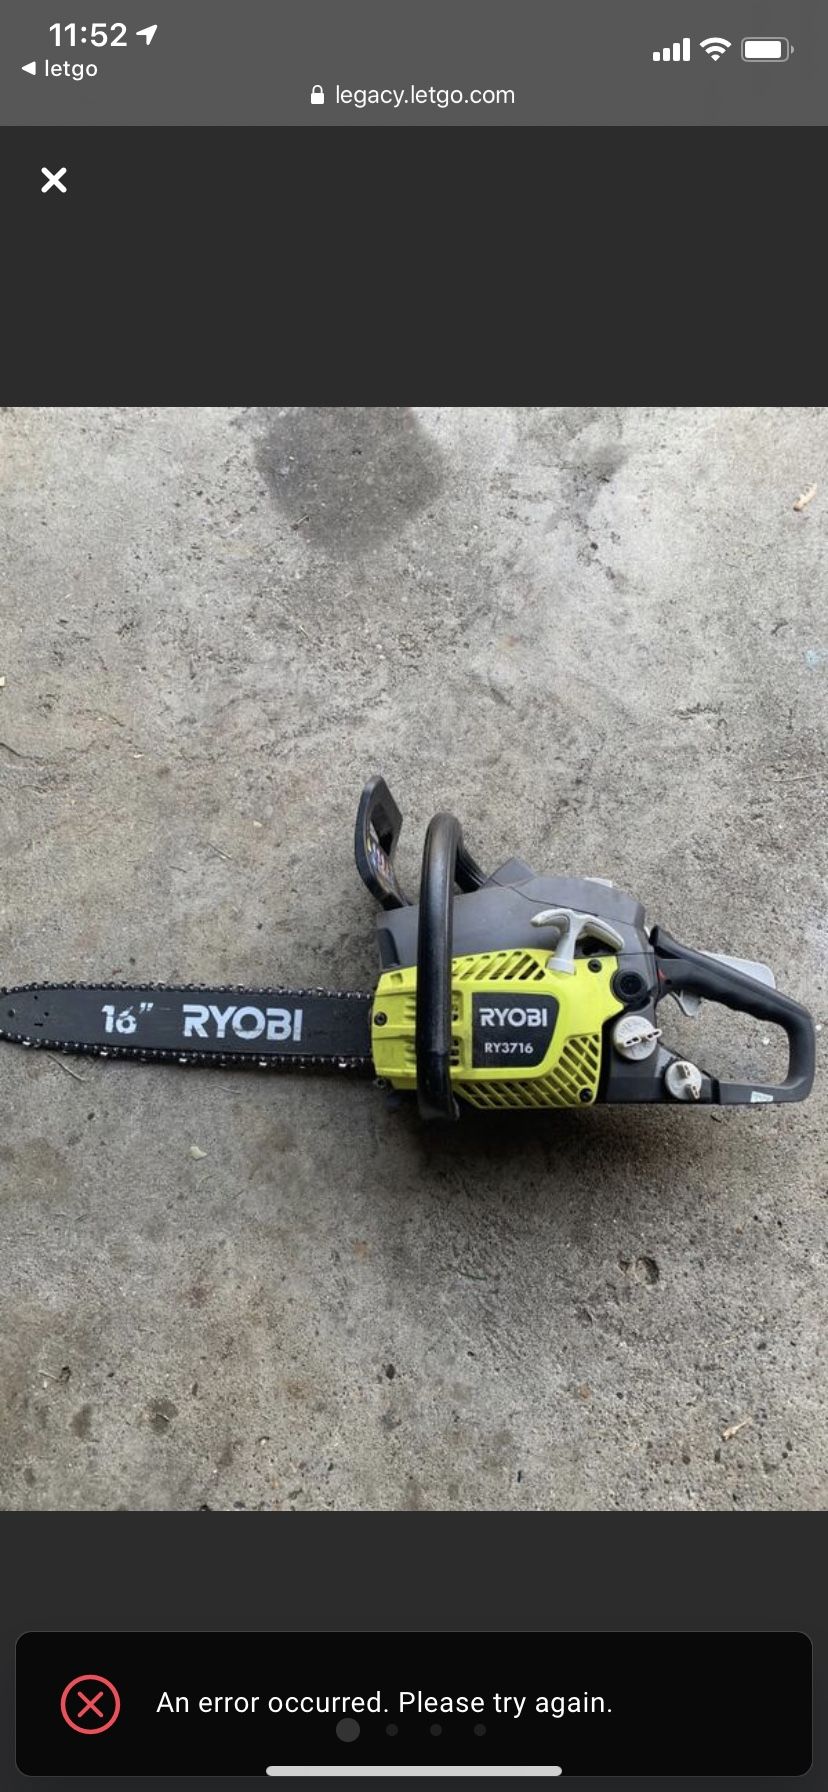 Ryobi chainsaw